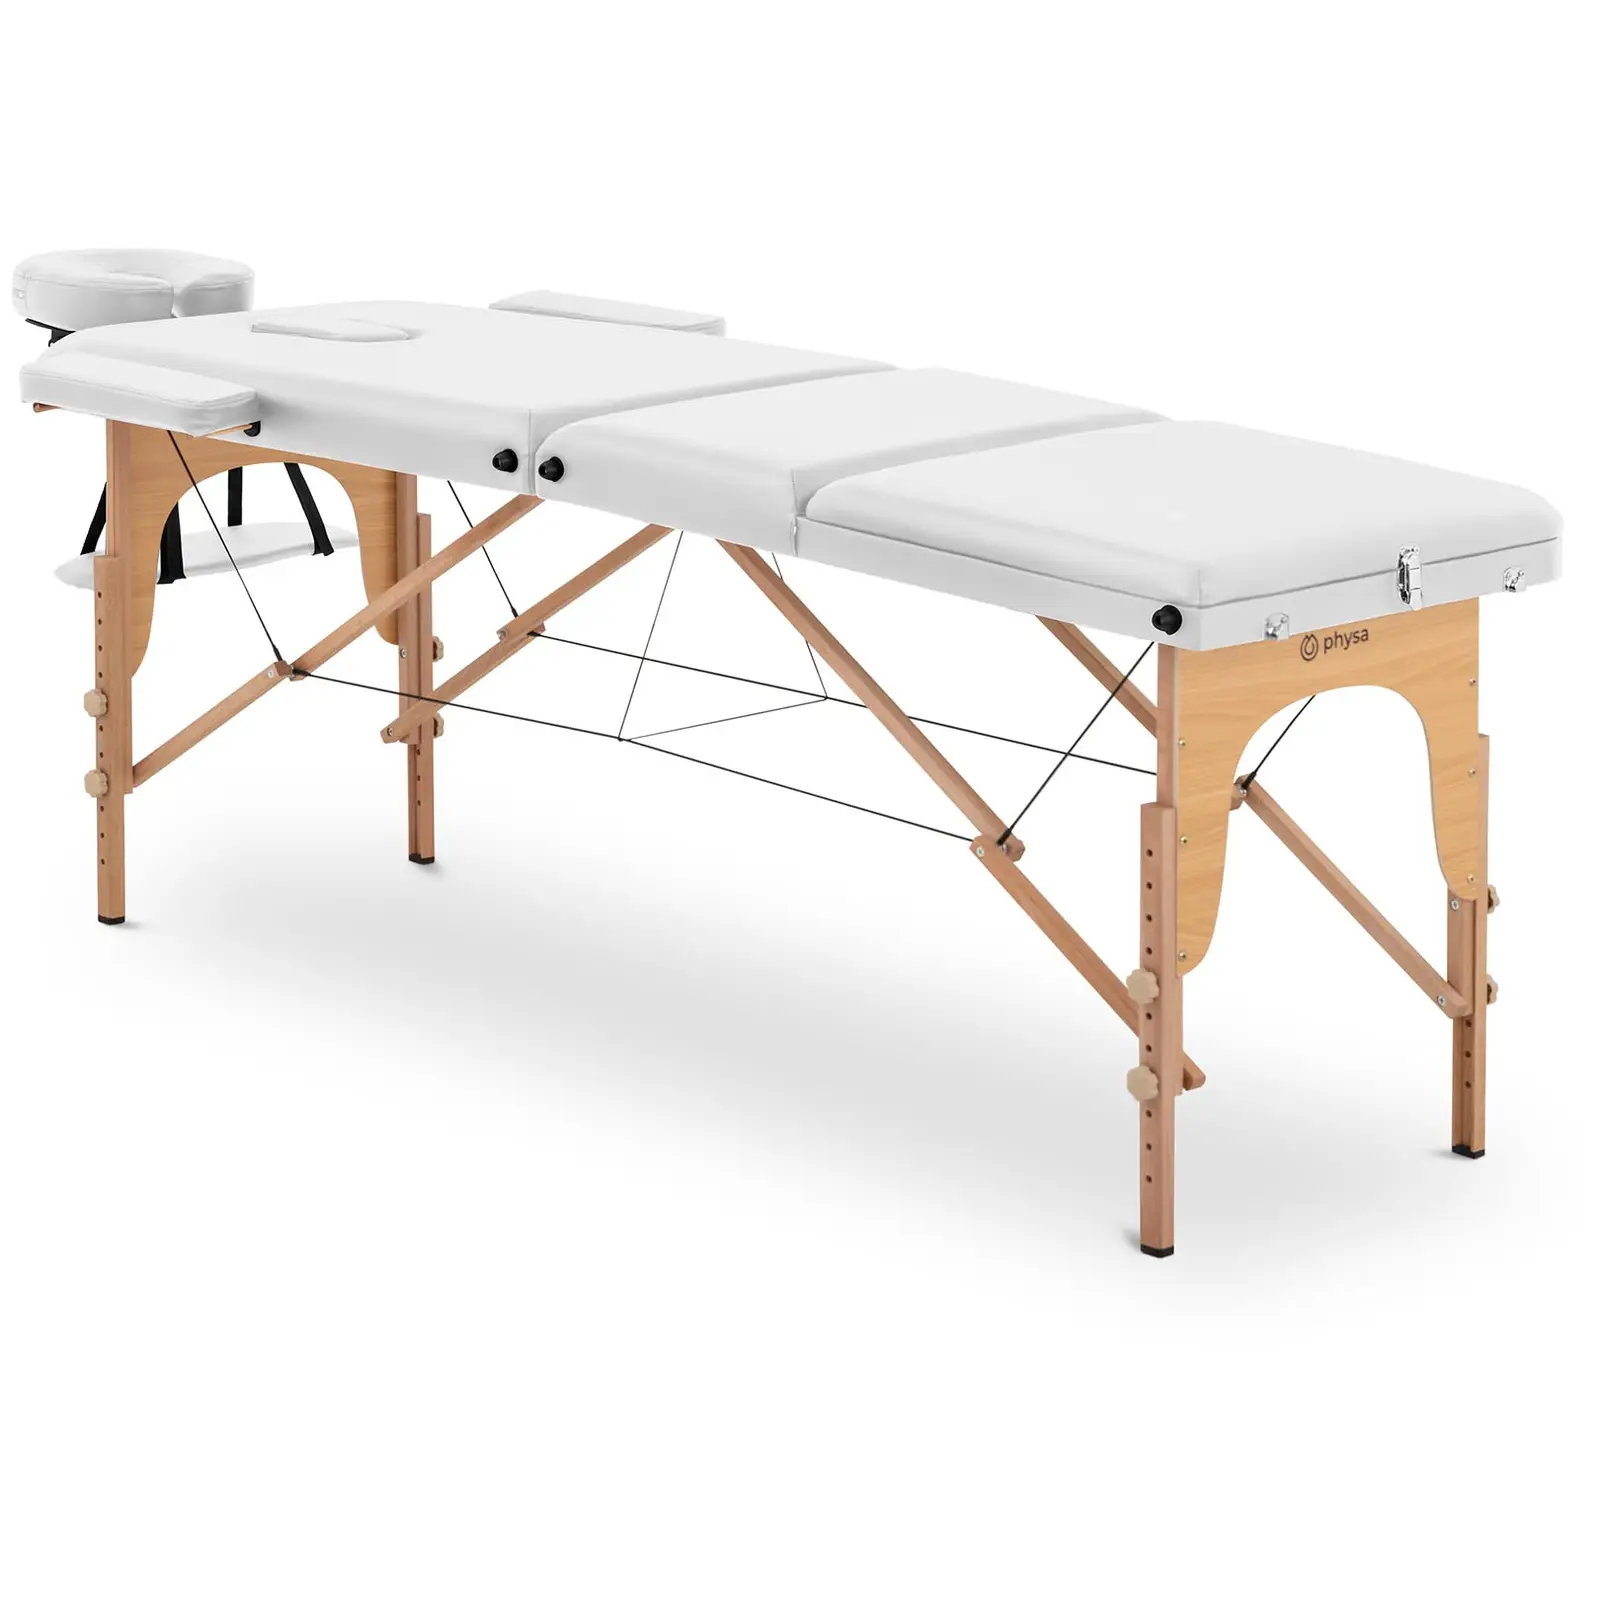 Lettino da massaggio portatile - Poggiapiedi inclinabile - Extra largo (70 cm) - Legno di faggio - Bianco